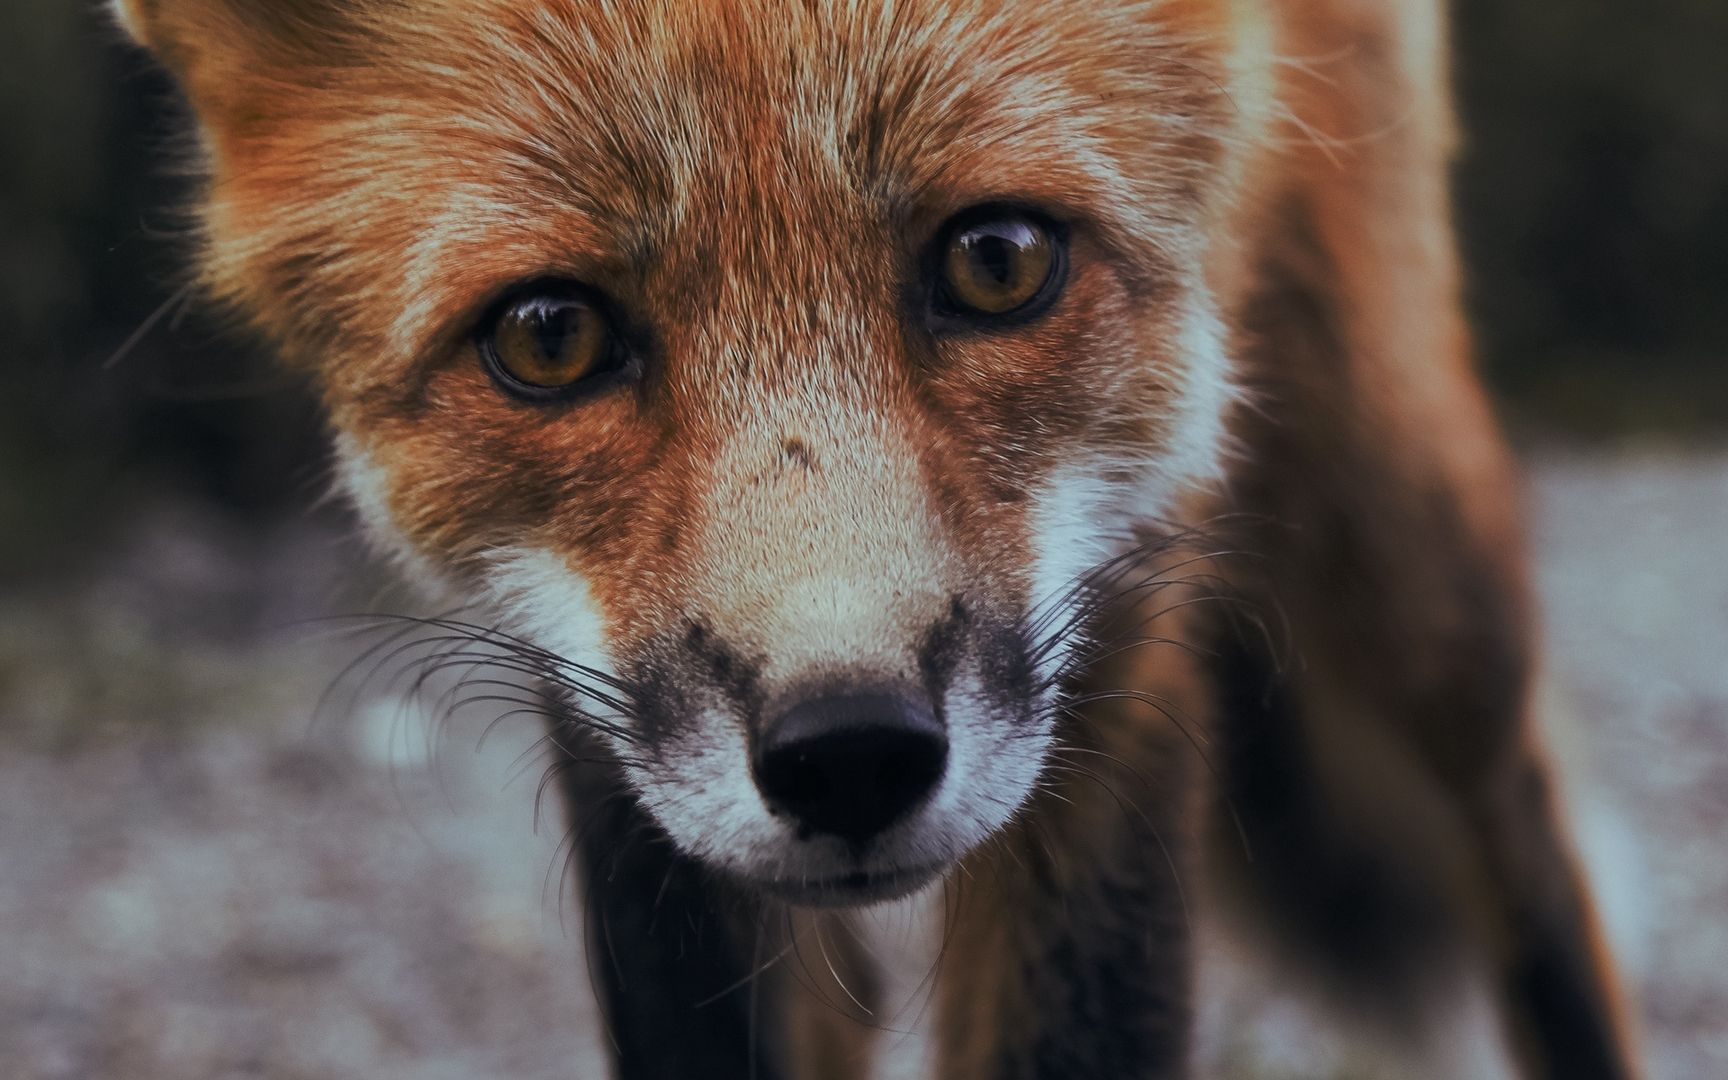 野外嗅觉灵敏的动物狐狸看着挺可爱其实很狡猾